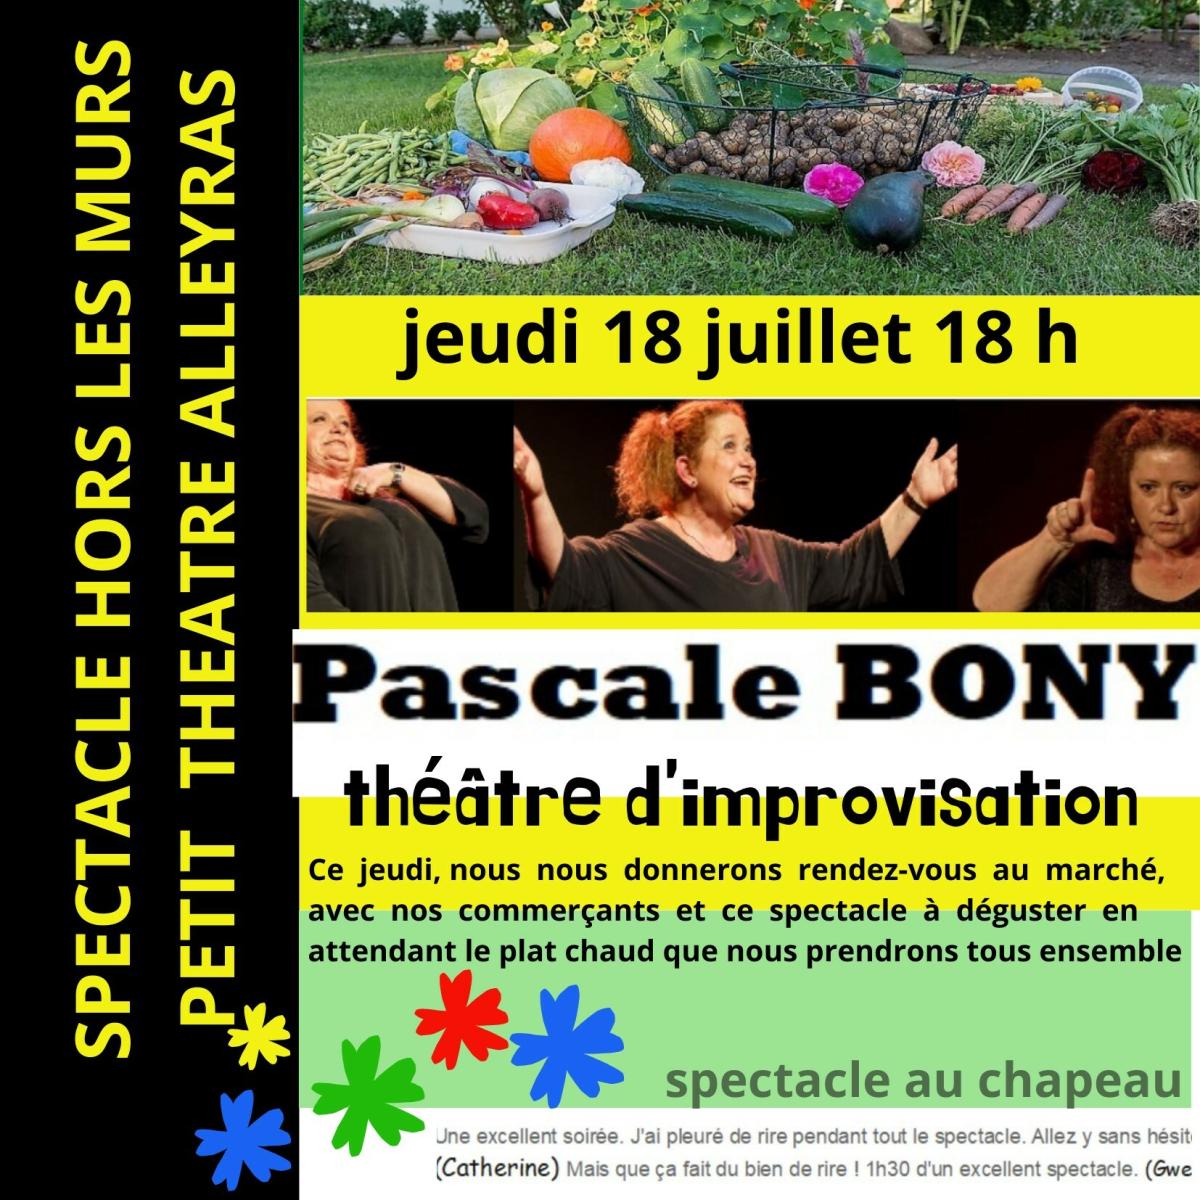 Théâtre d'improvisation - Pascale Bony